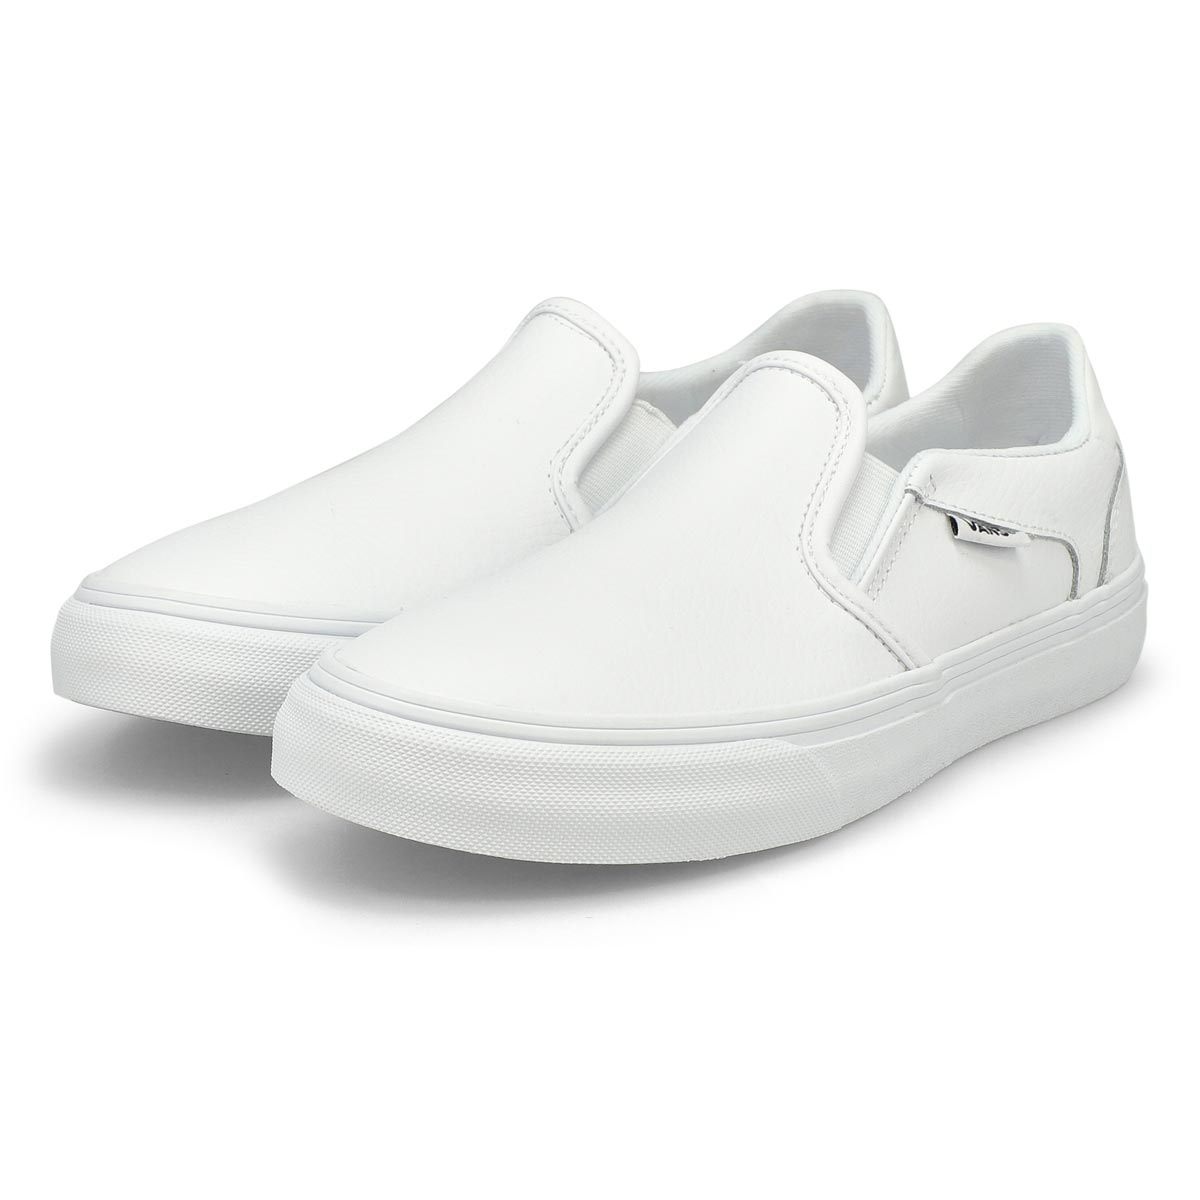 Vans Women's Asher Deluxe Sneaker - White/Whi | SoftMoc.com